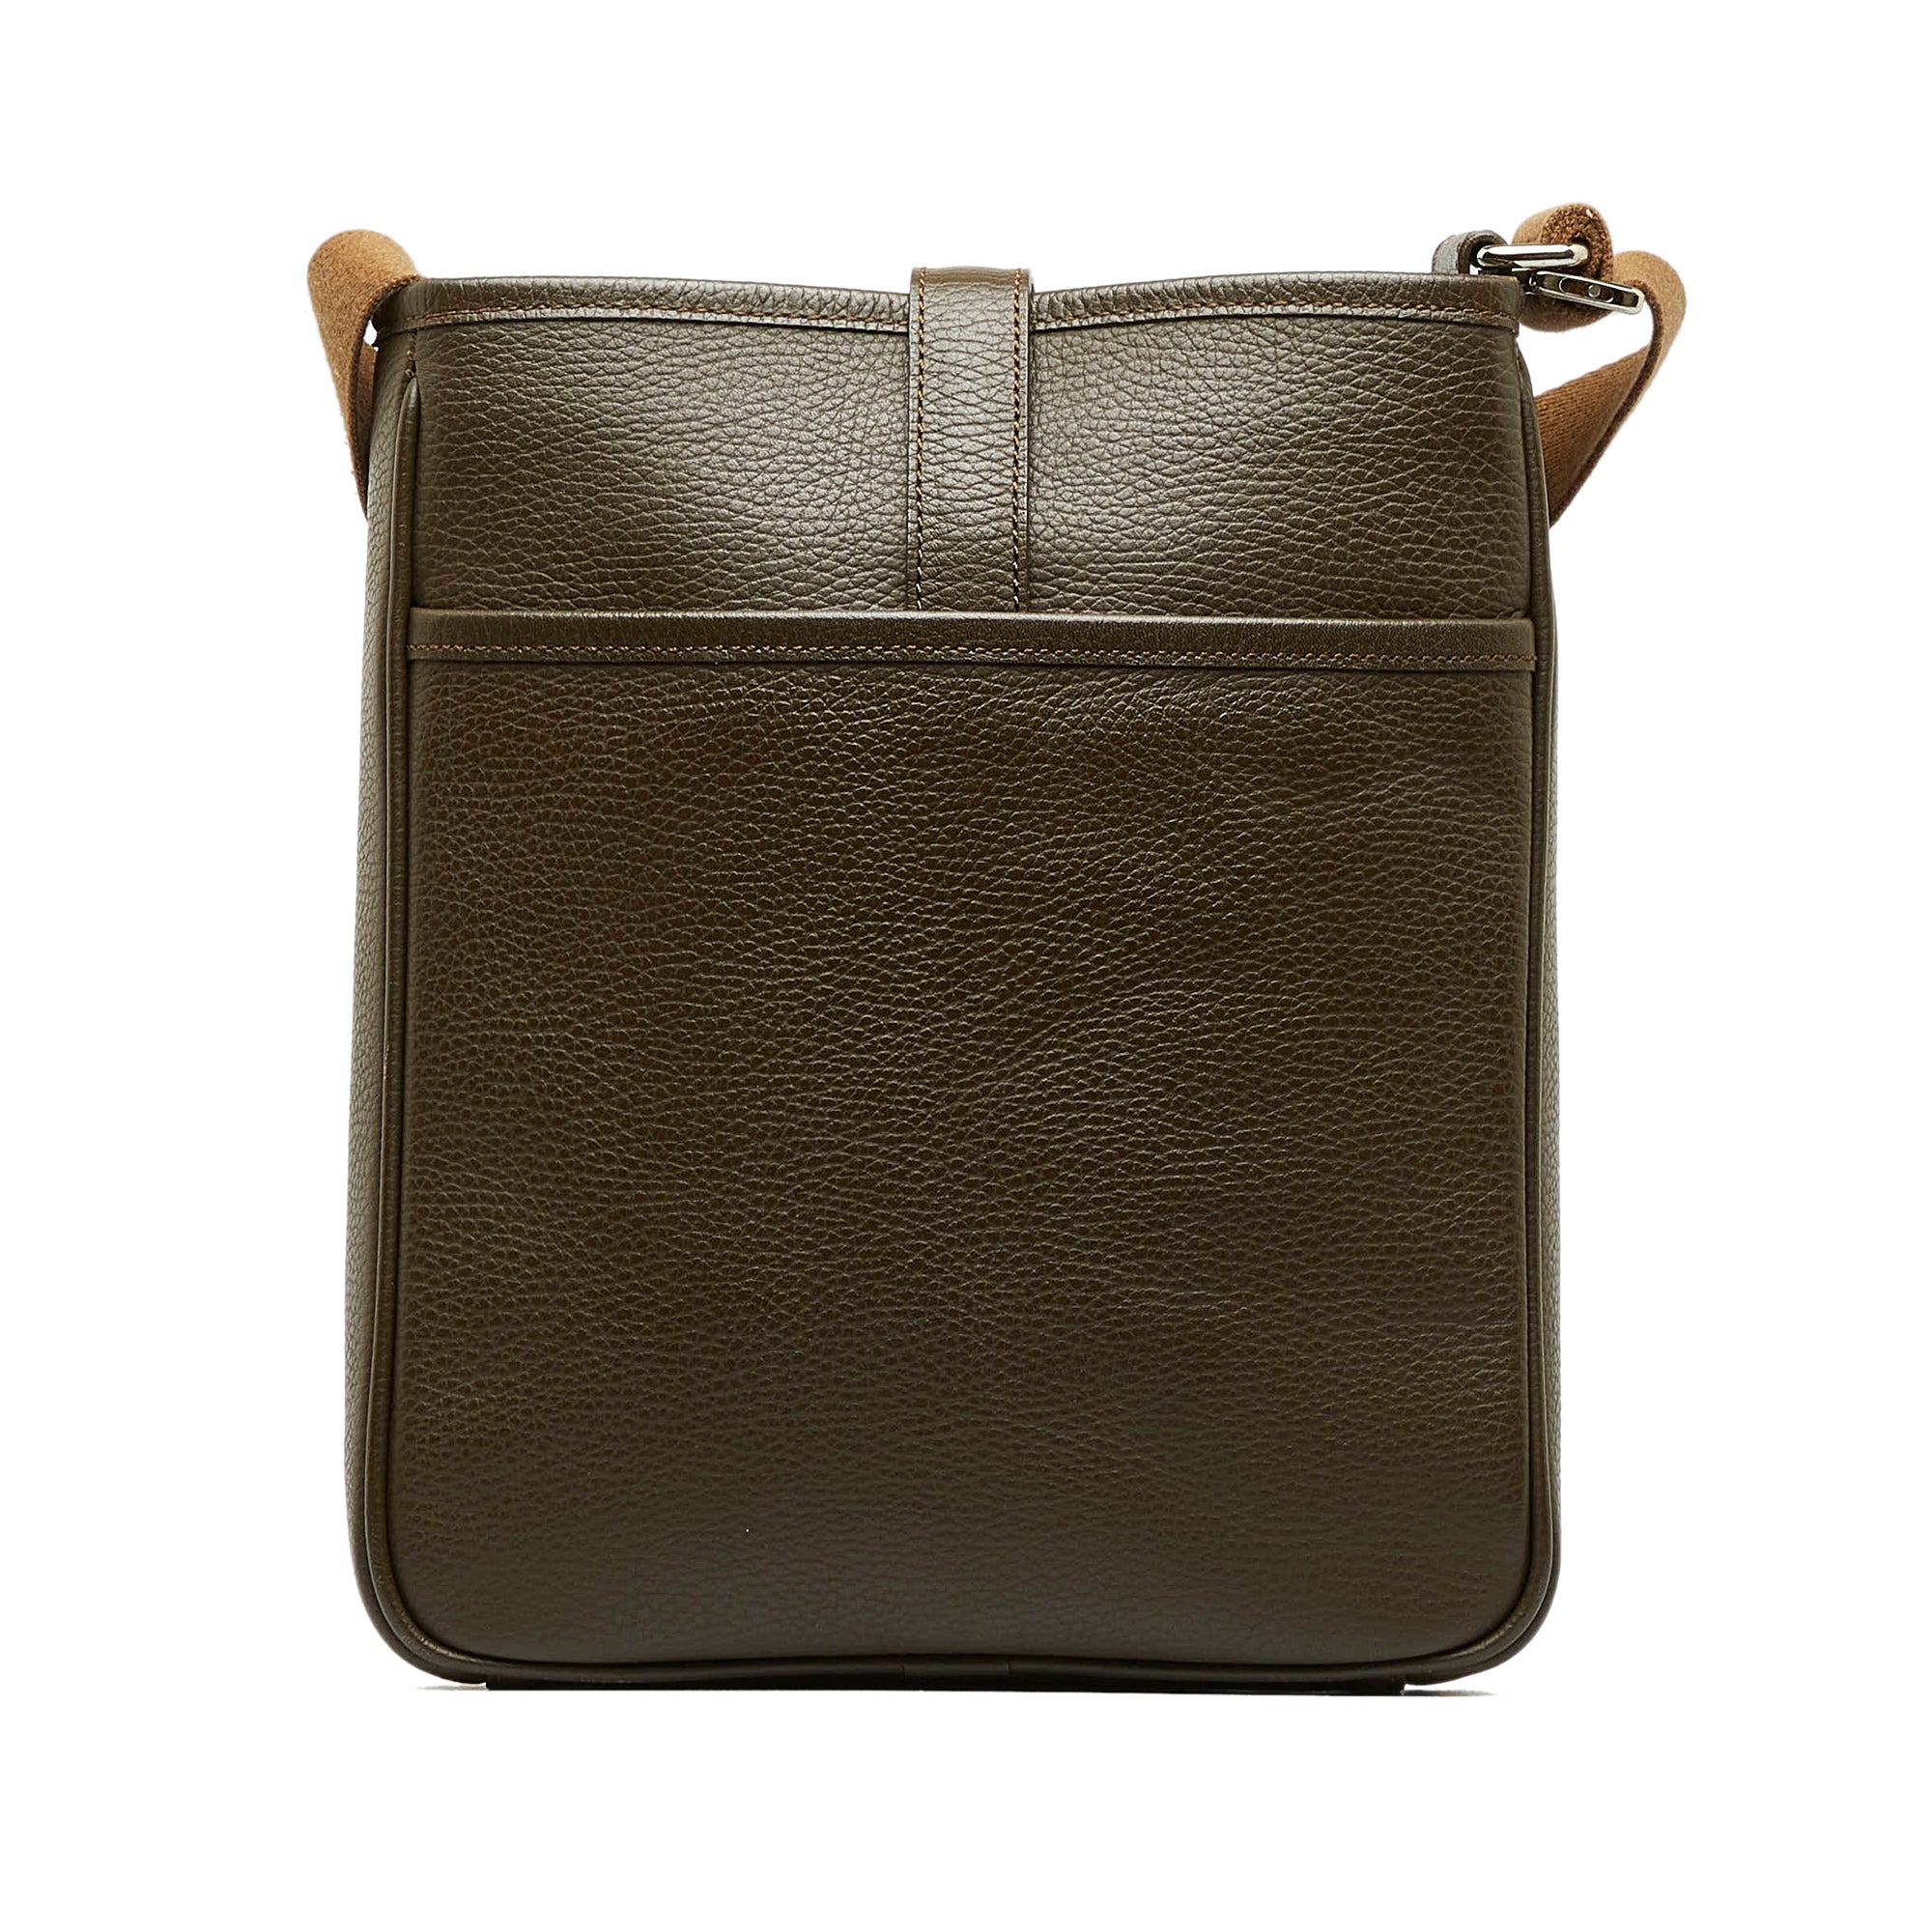 Louis Vuitton - Authenticated Handbag - Leather Beige Plain for Women, Good Condition